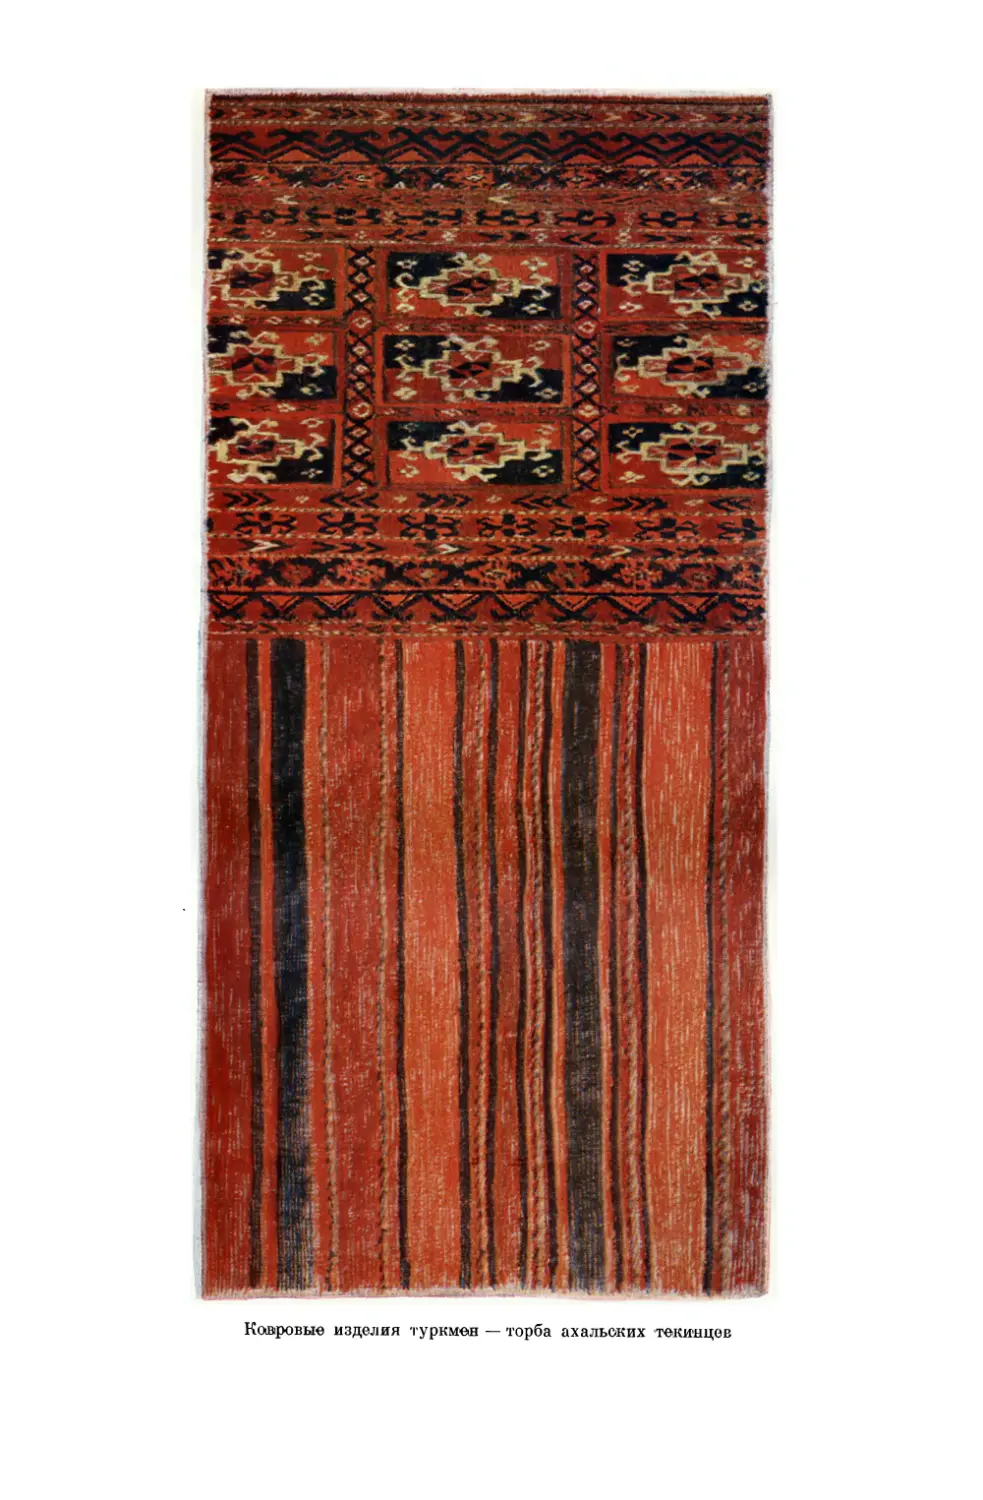 Вклейка. Ковровые изделия туркмен: торба ахальских текинцев